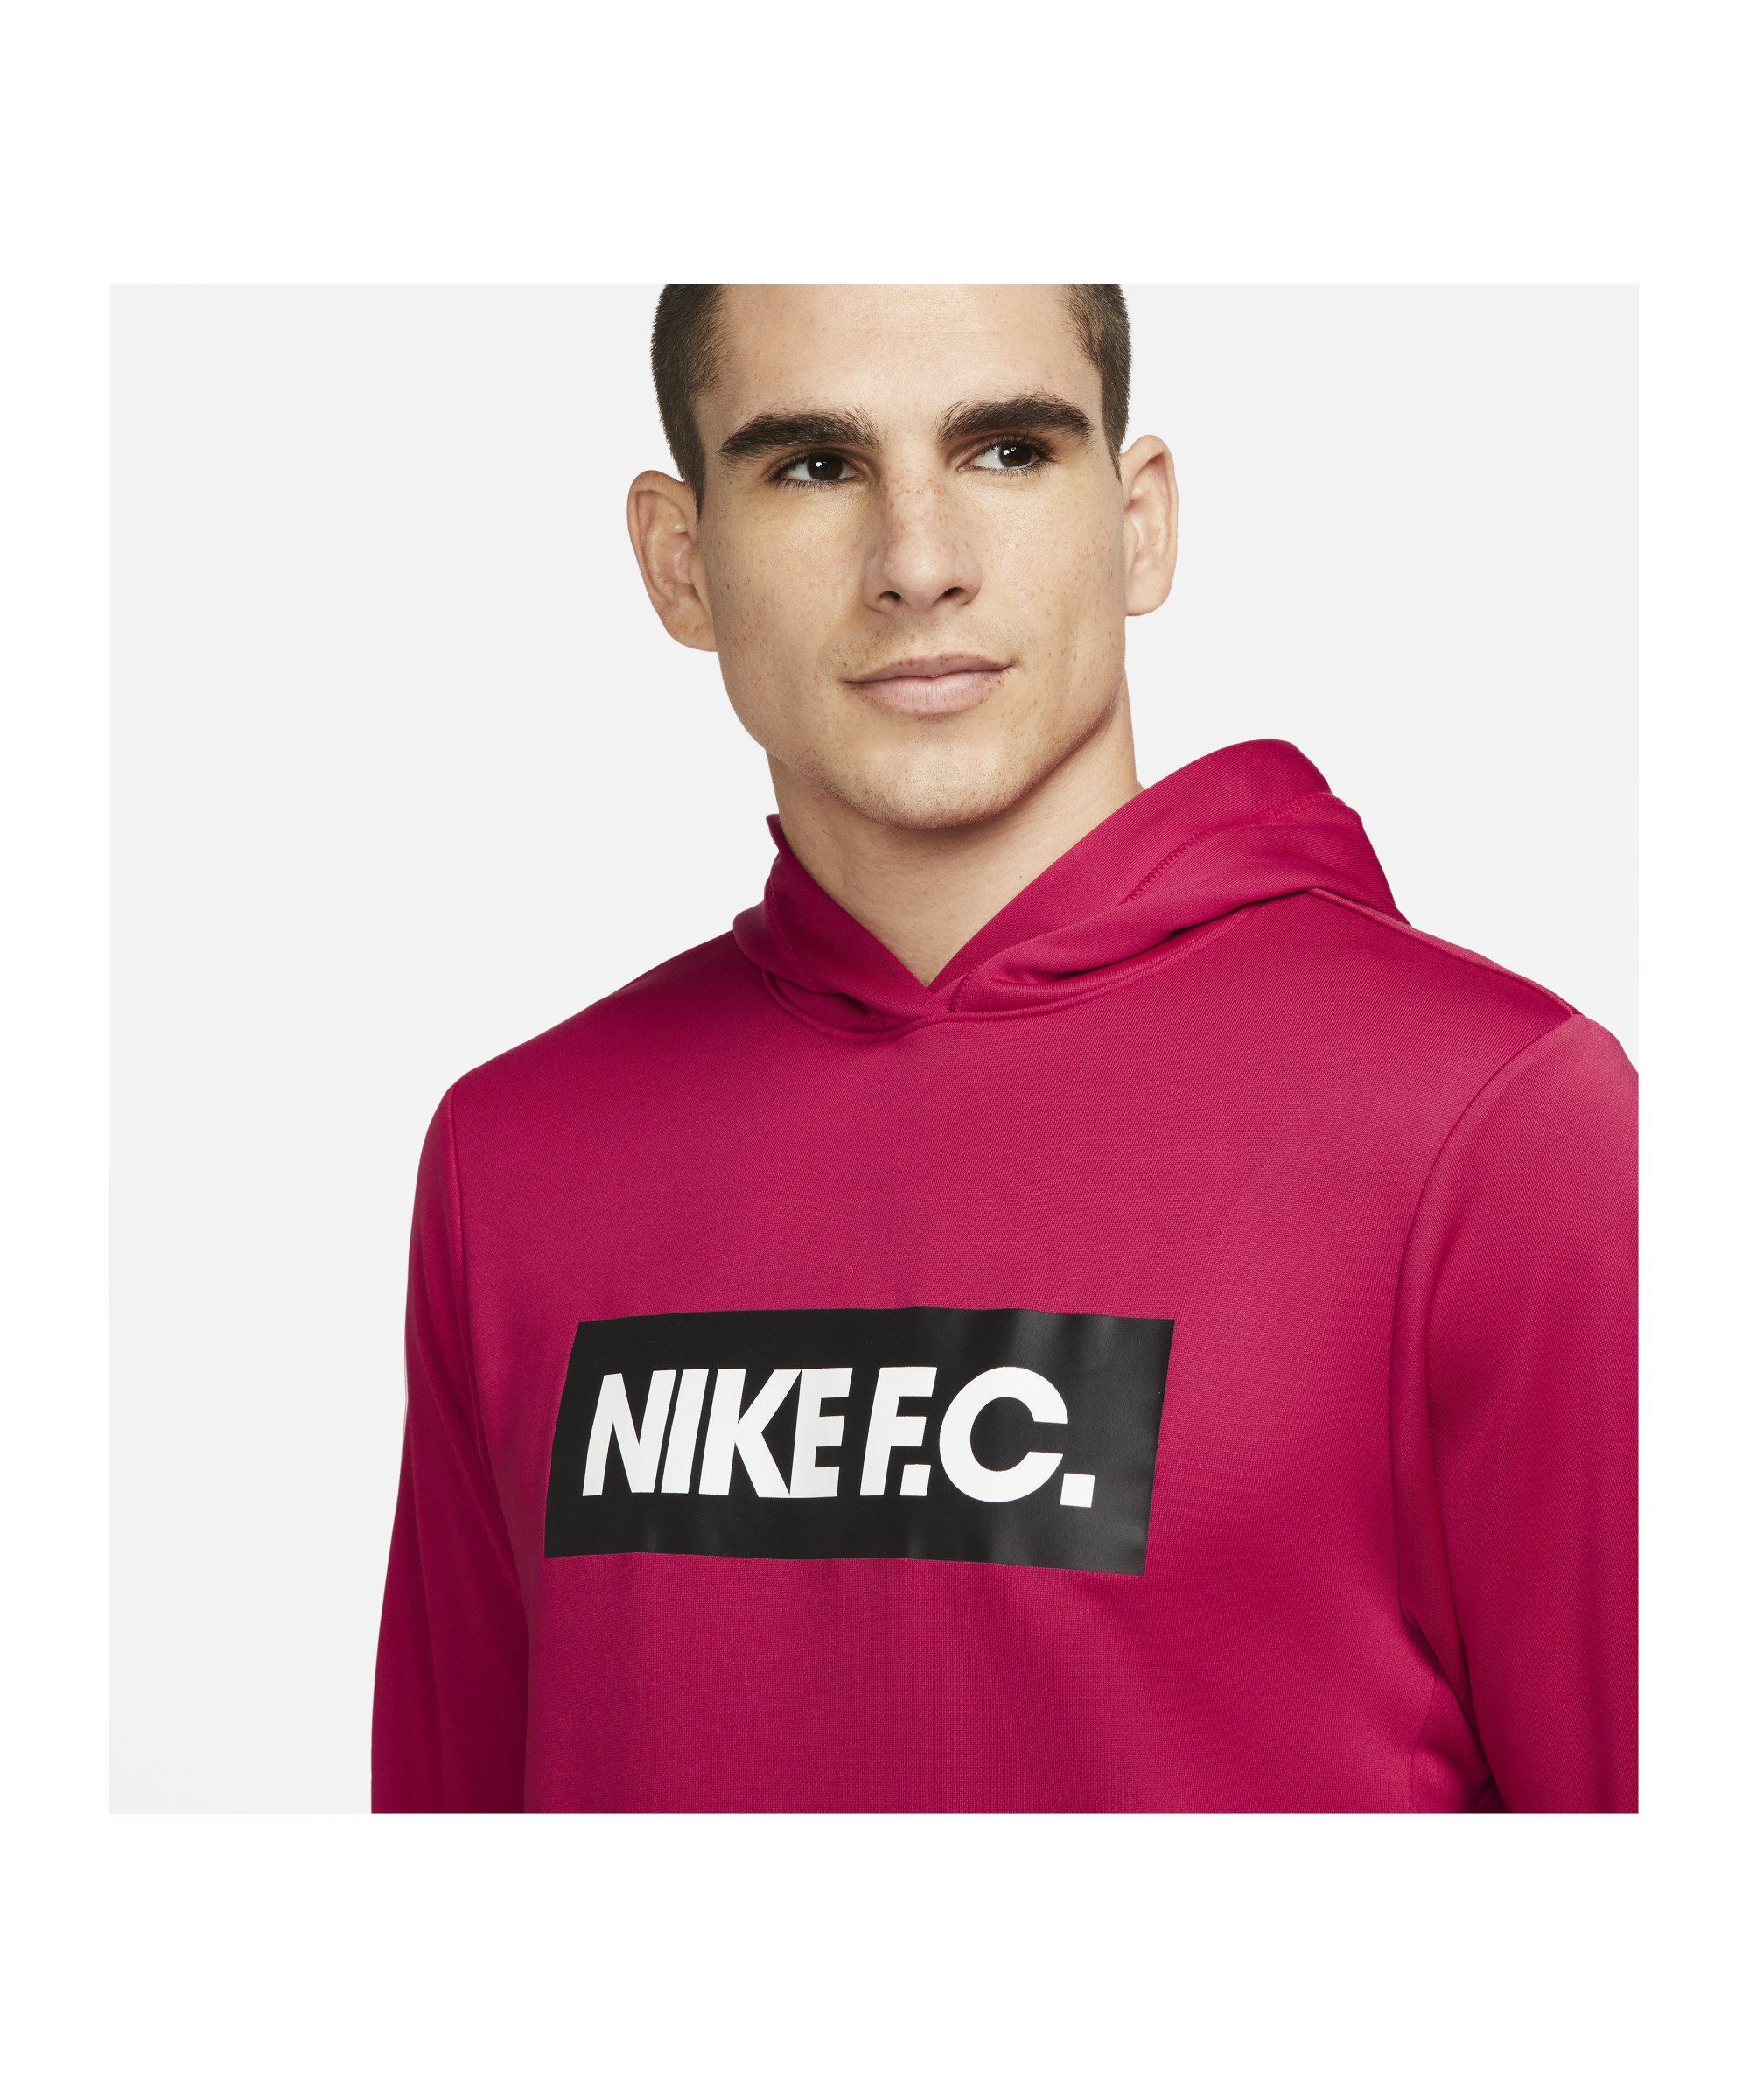 F.C. Nike Sweatshirt pinkschwarzweiss Hoody Fleece Sportswear